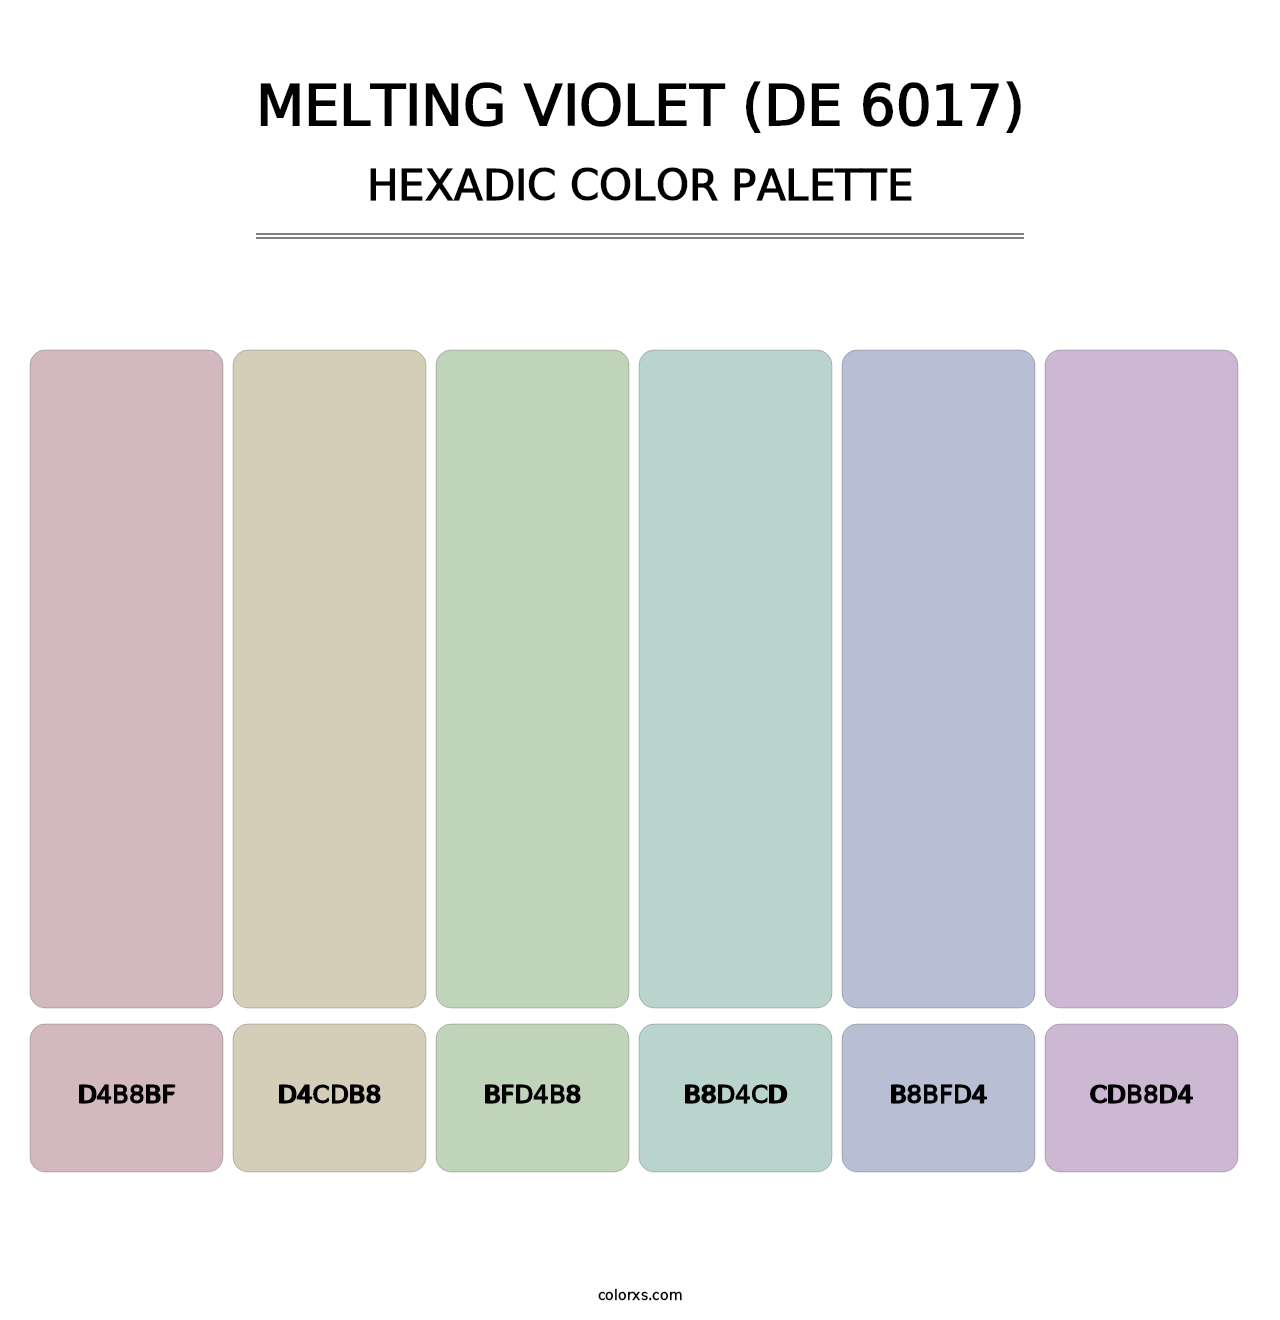 Melting Violet (DE 6017) - Hexadic Color Palette